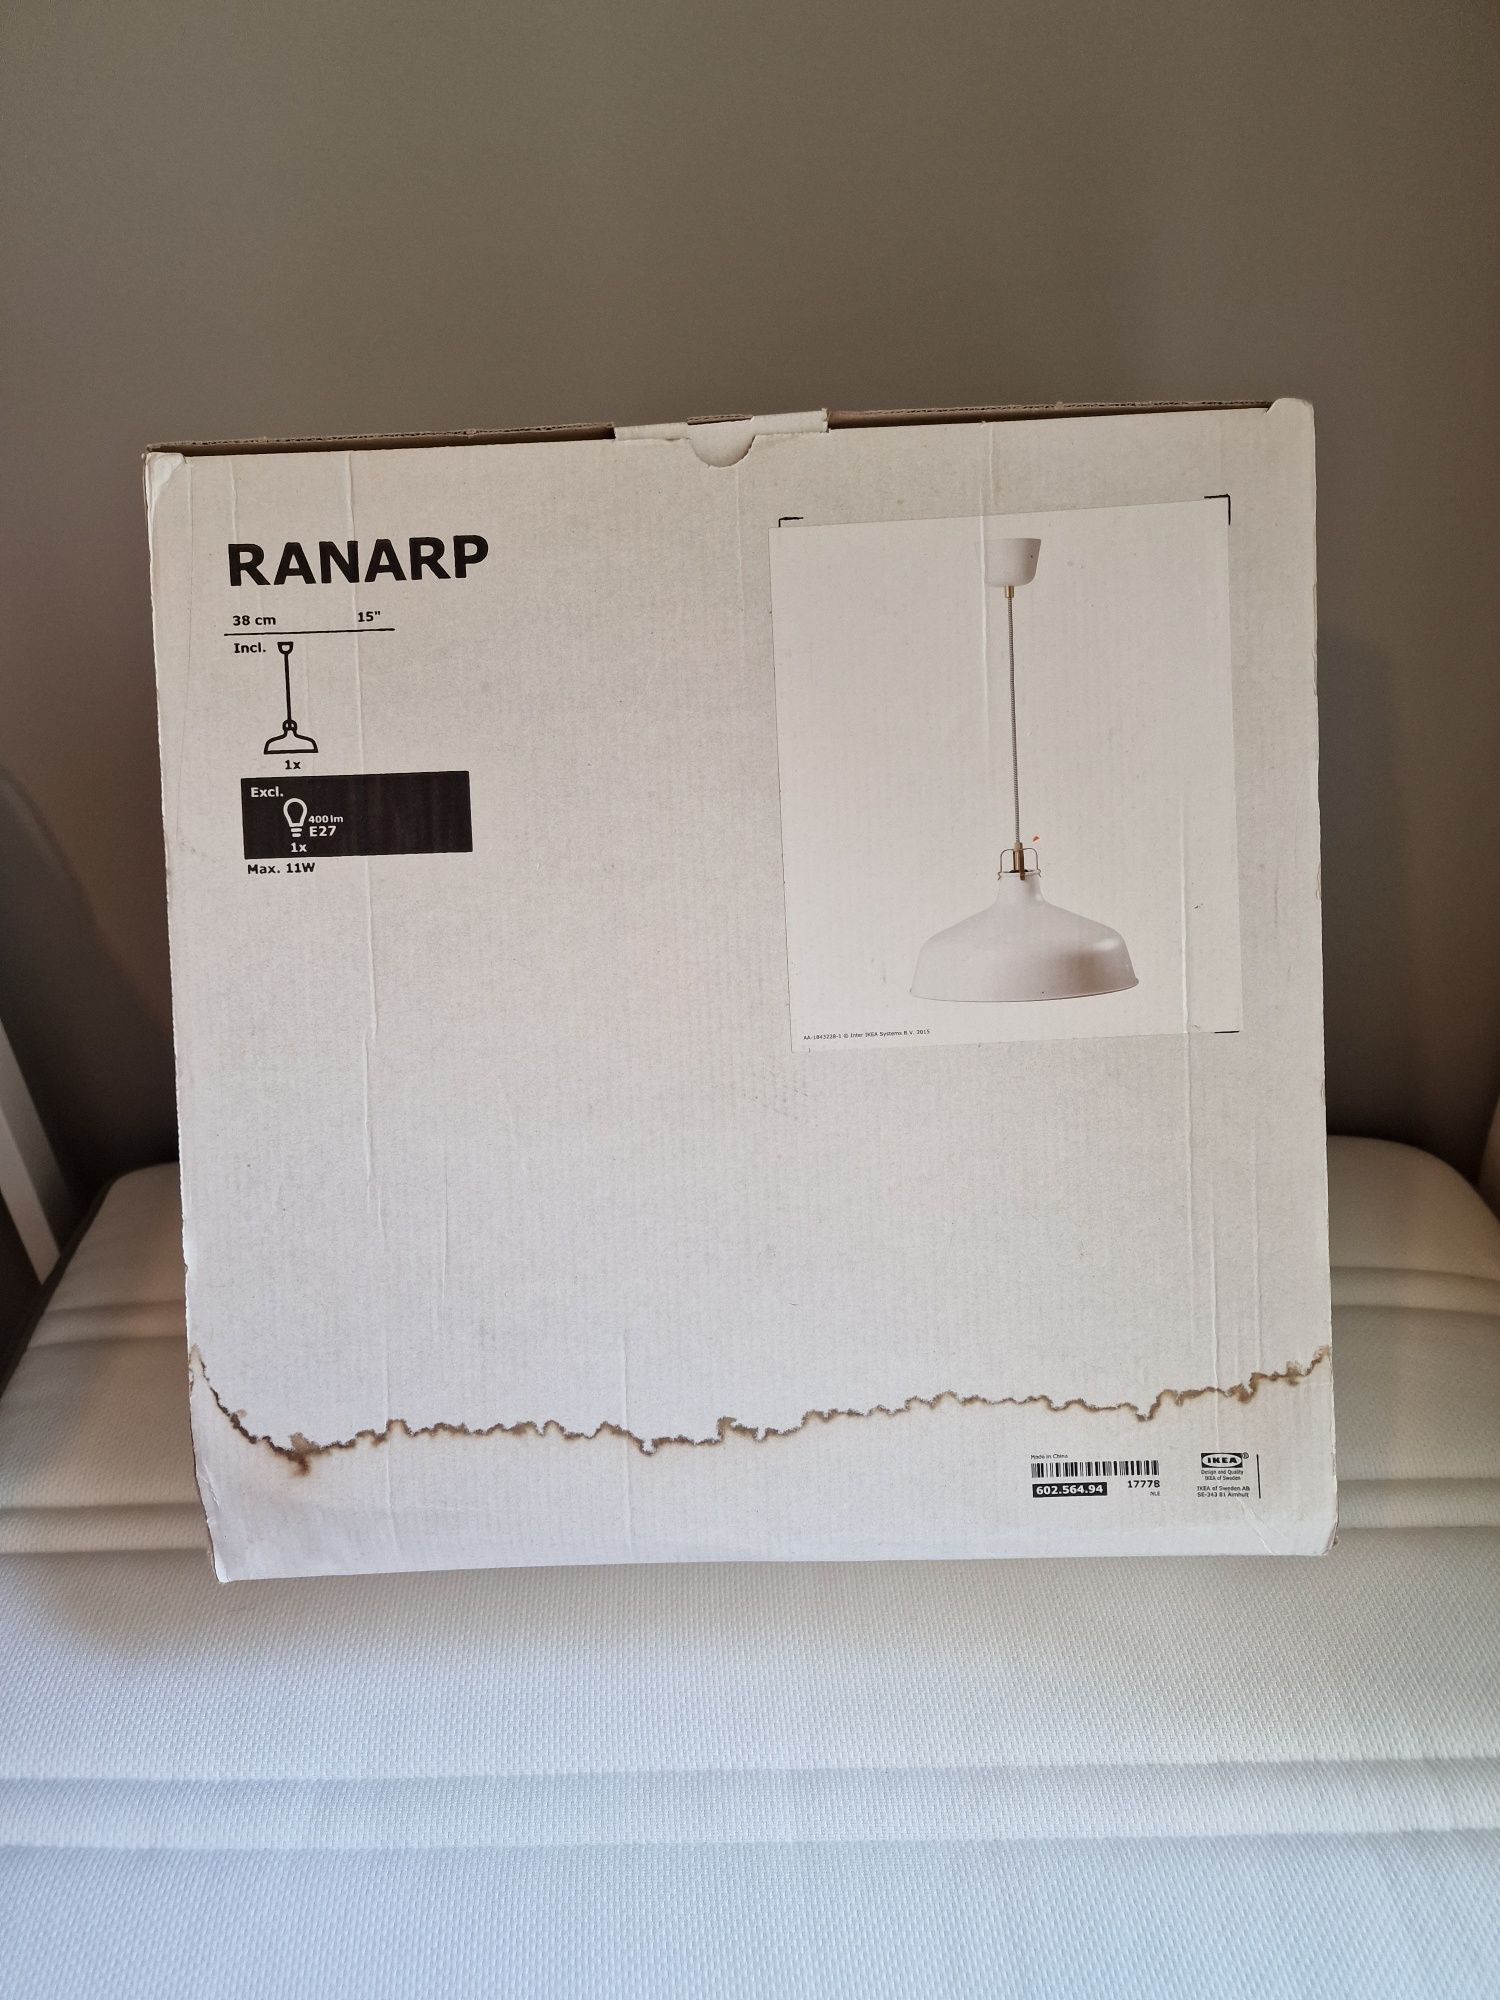 Candeeiro Ranarp IKEA branco 38cm NOVO